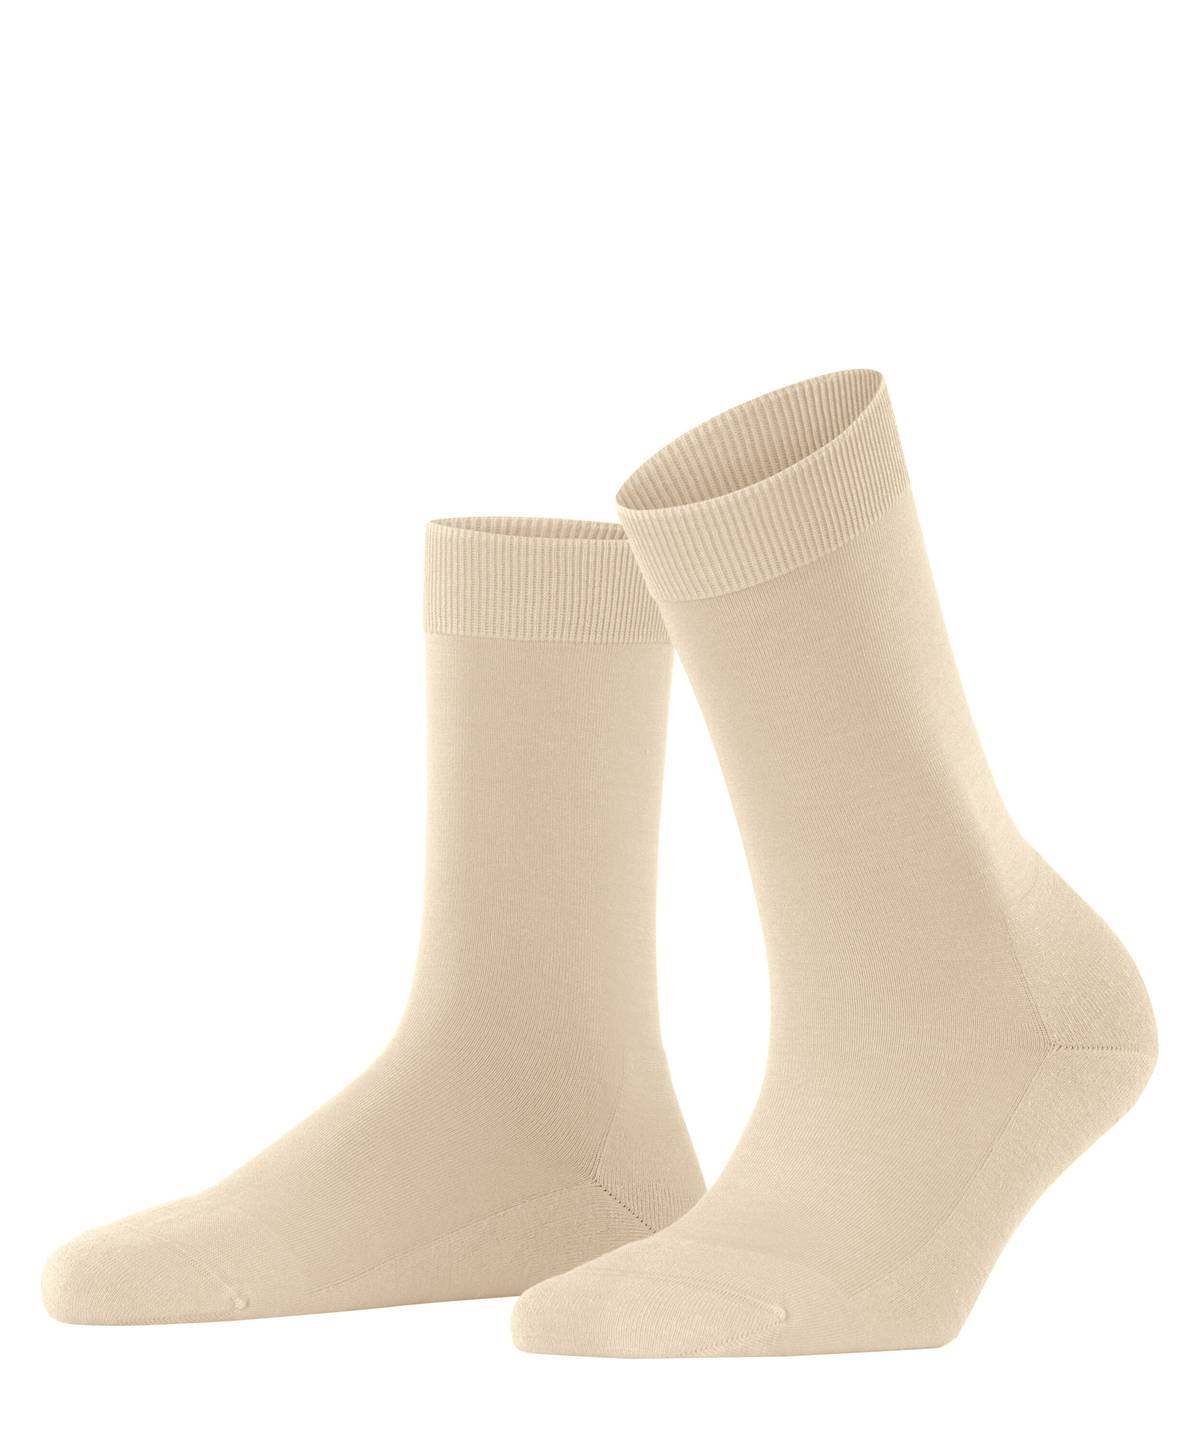 FALKE Kurzsocken Damen Socken - ClimaWool, Kurzsocken, einfarbig Creme